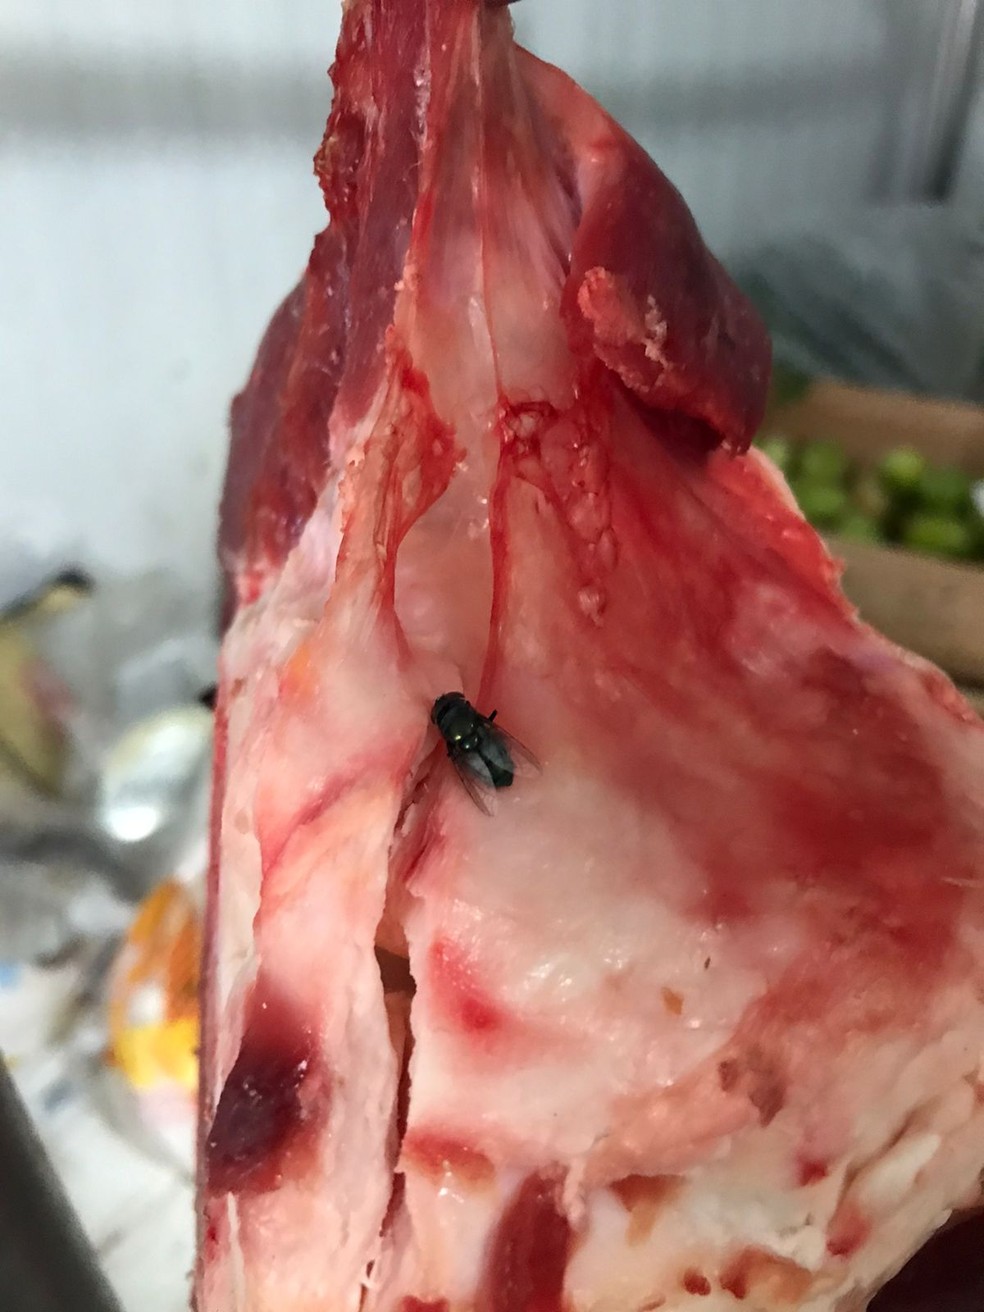 Equipes encontraram insetos em carne bovina estragada apreendida em Maceió — Foto: Vigilância Sanitária